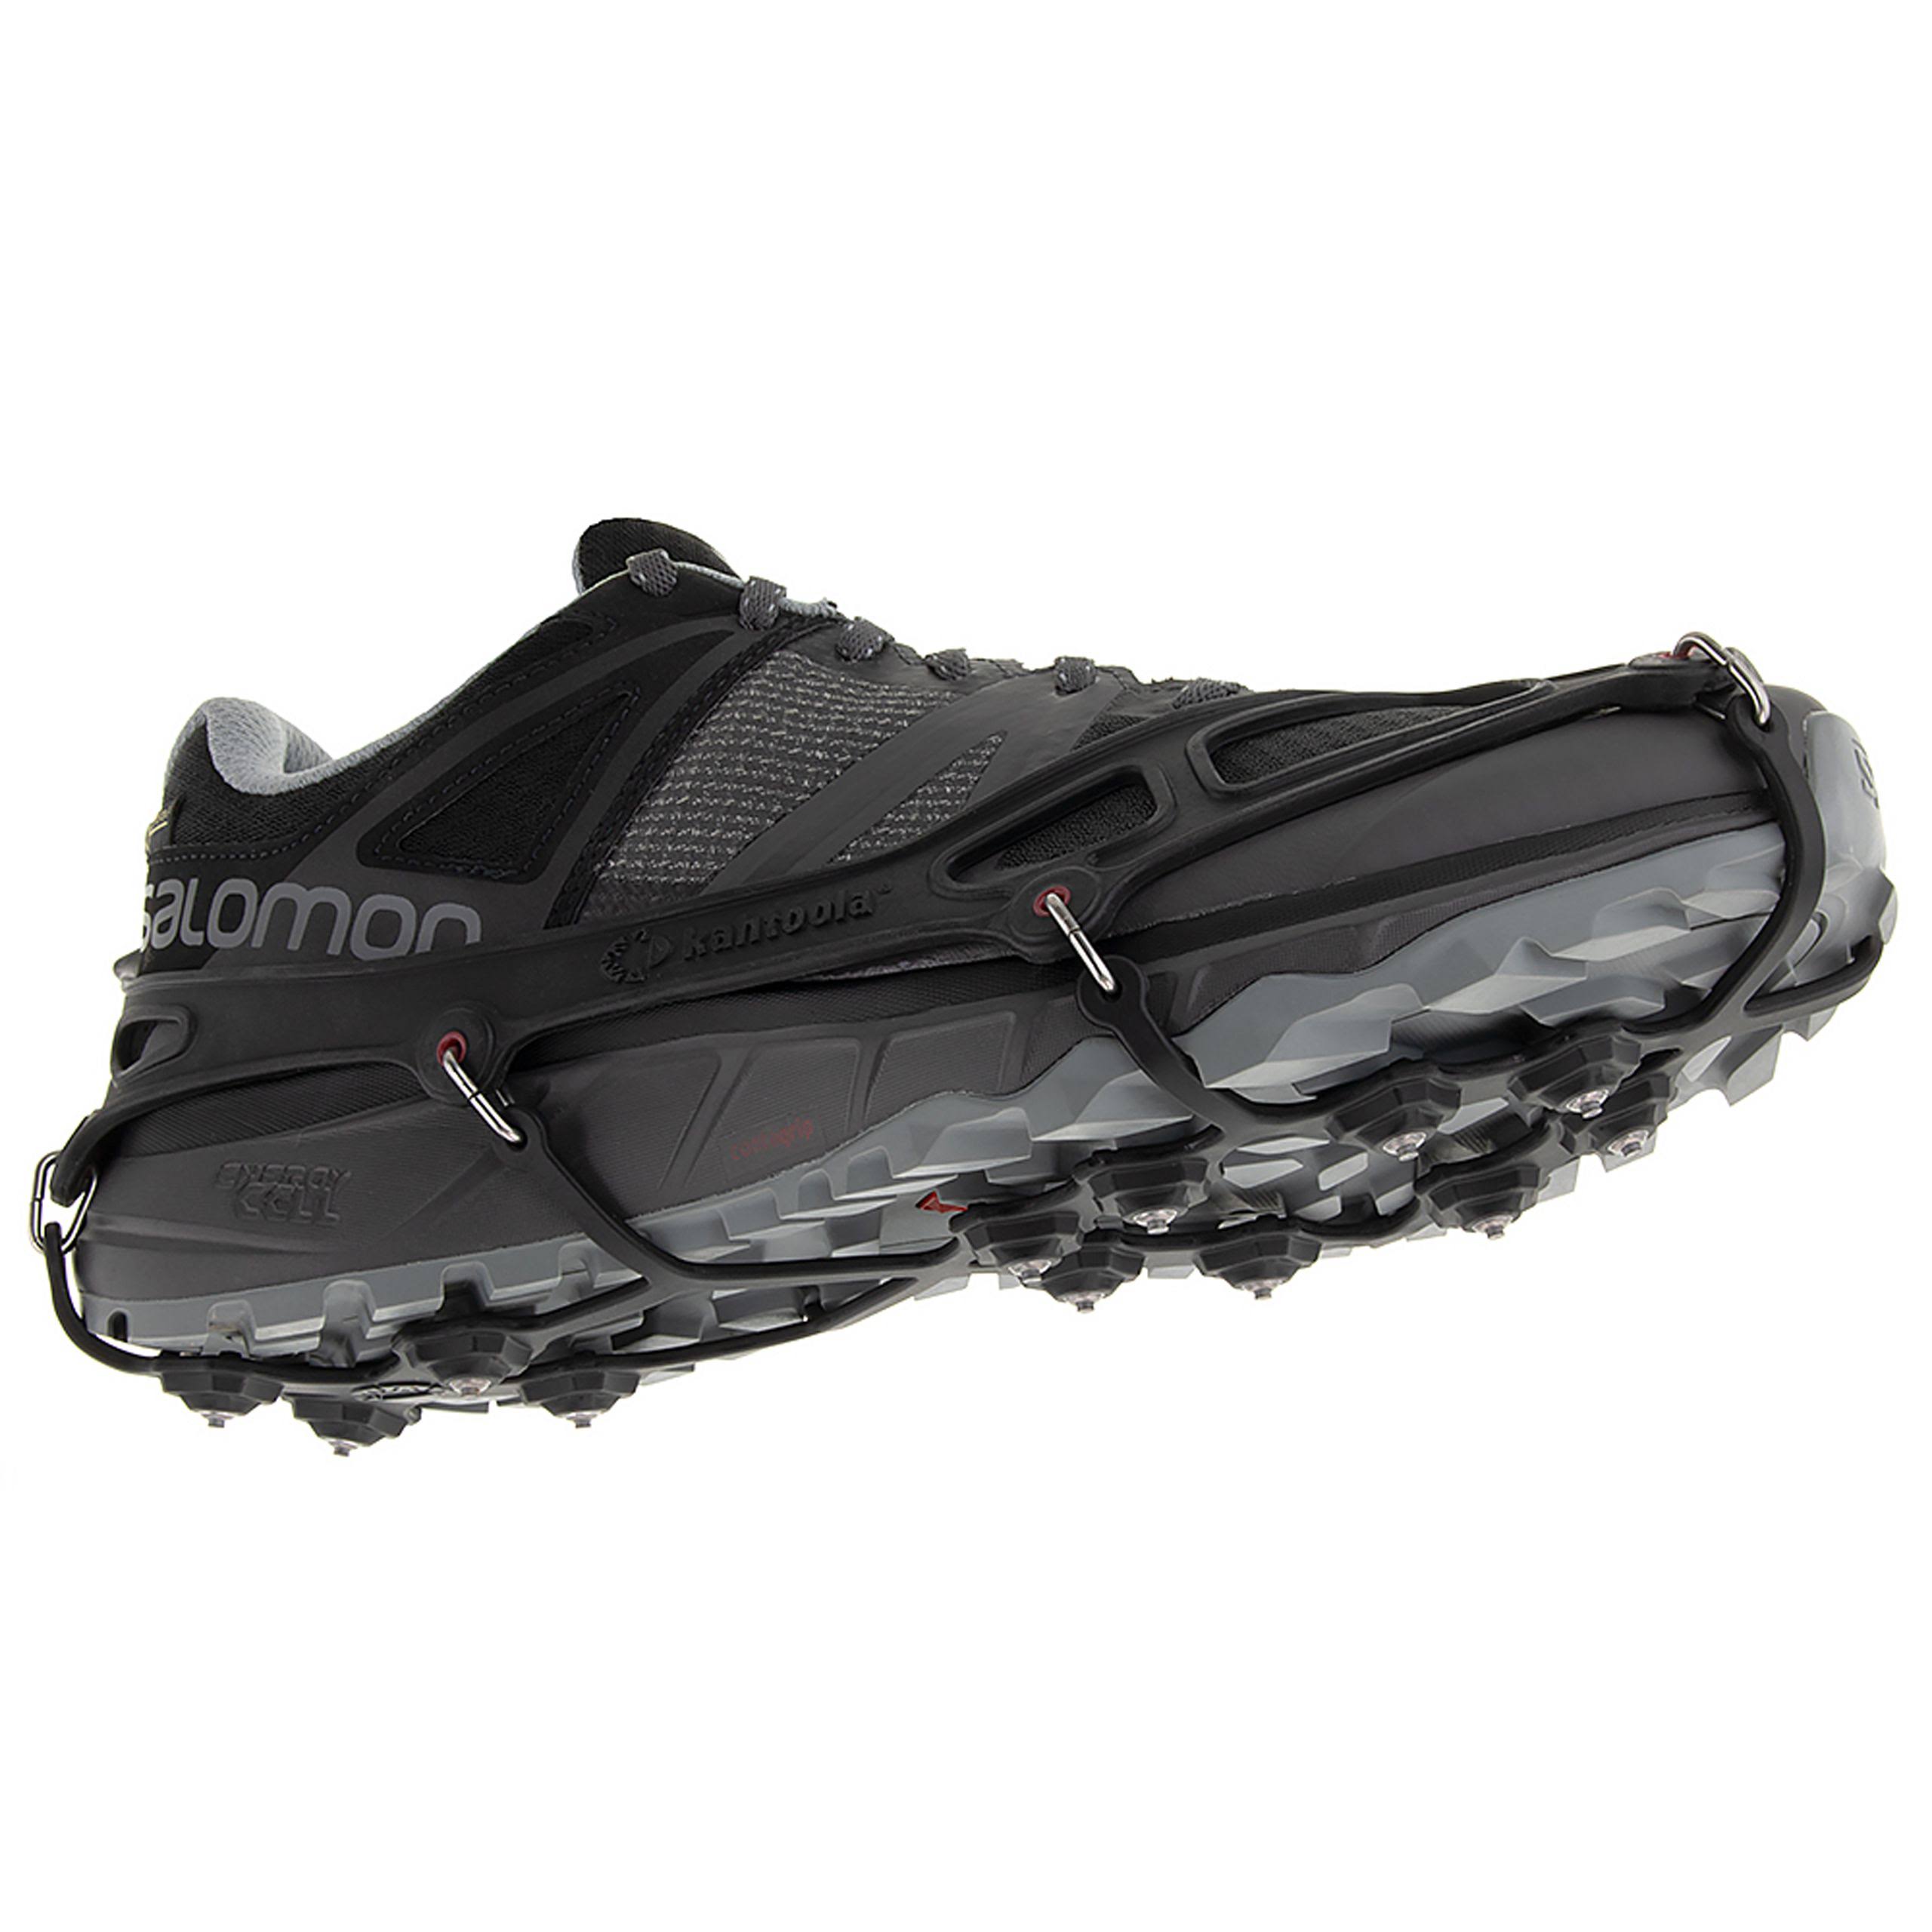 Kahtoola EXOspikes Footwear Traction Medium Black KT10008